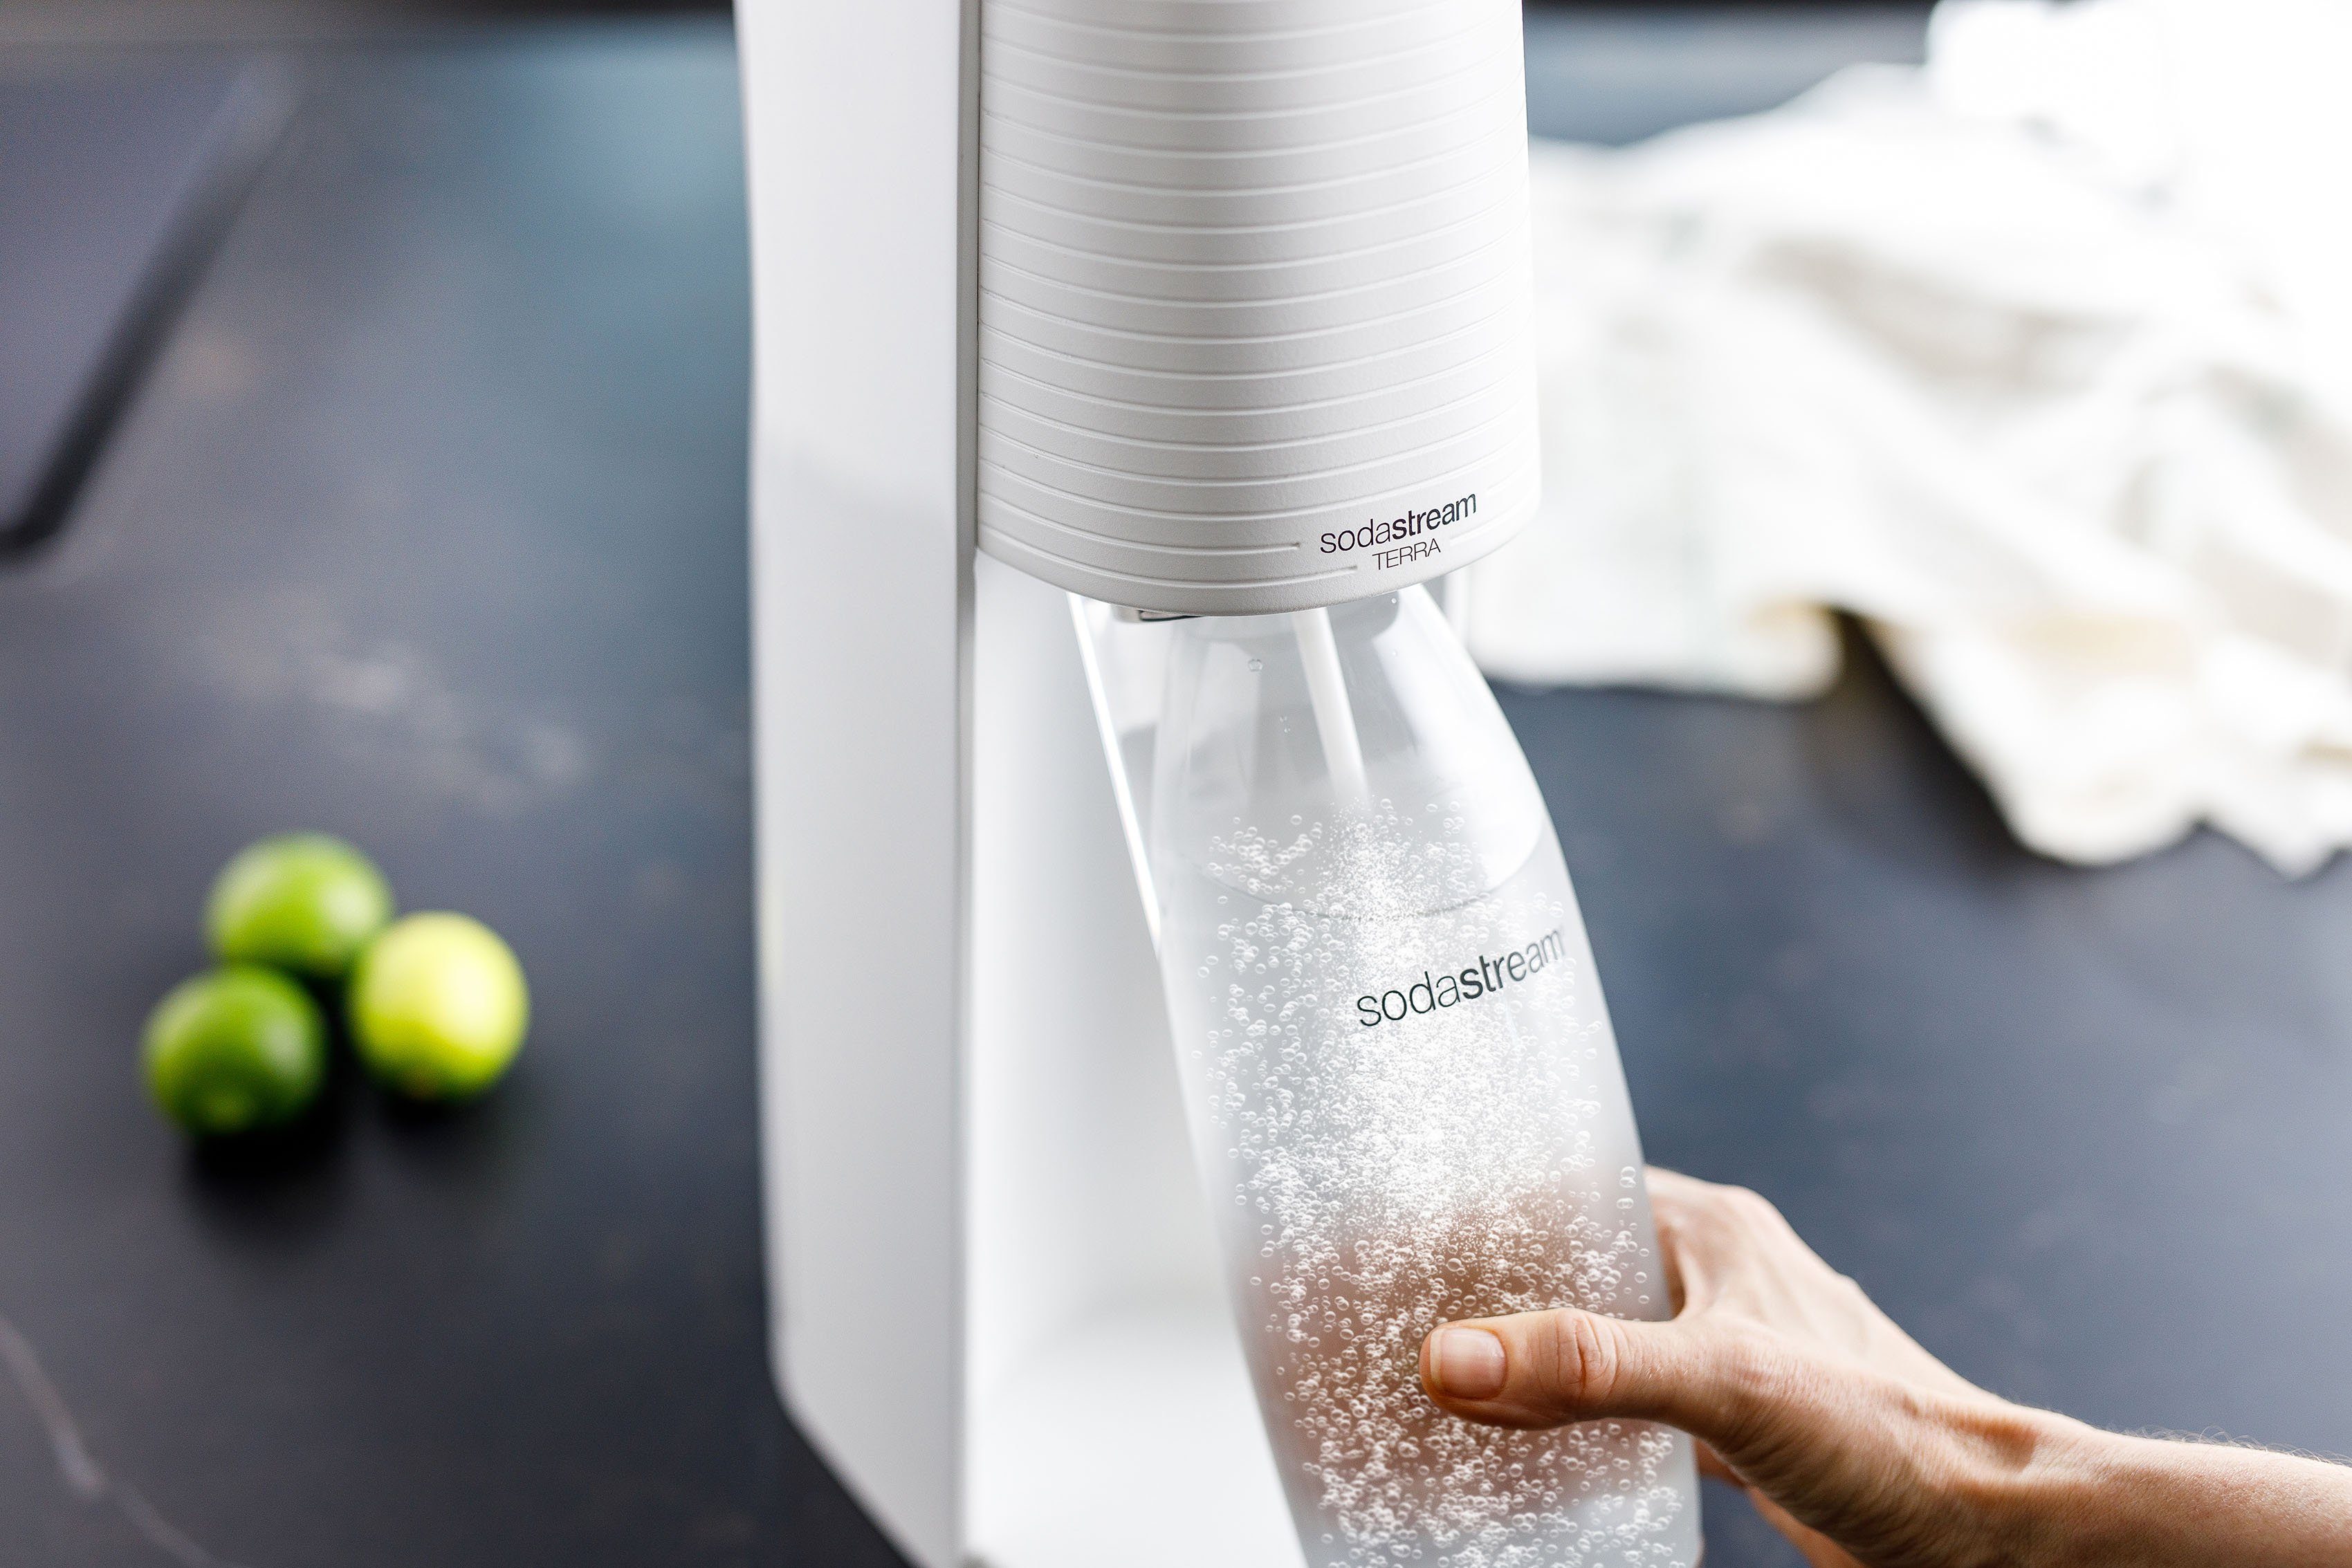 SodaStream Wassersprudler TERRA, inkl. 1x Kunststoff-Flasche CQC, spülmaschinenfeste weiß 1L CO2-Zylinder 1x